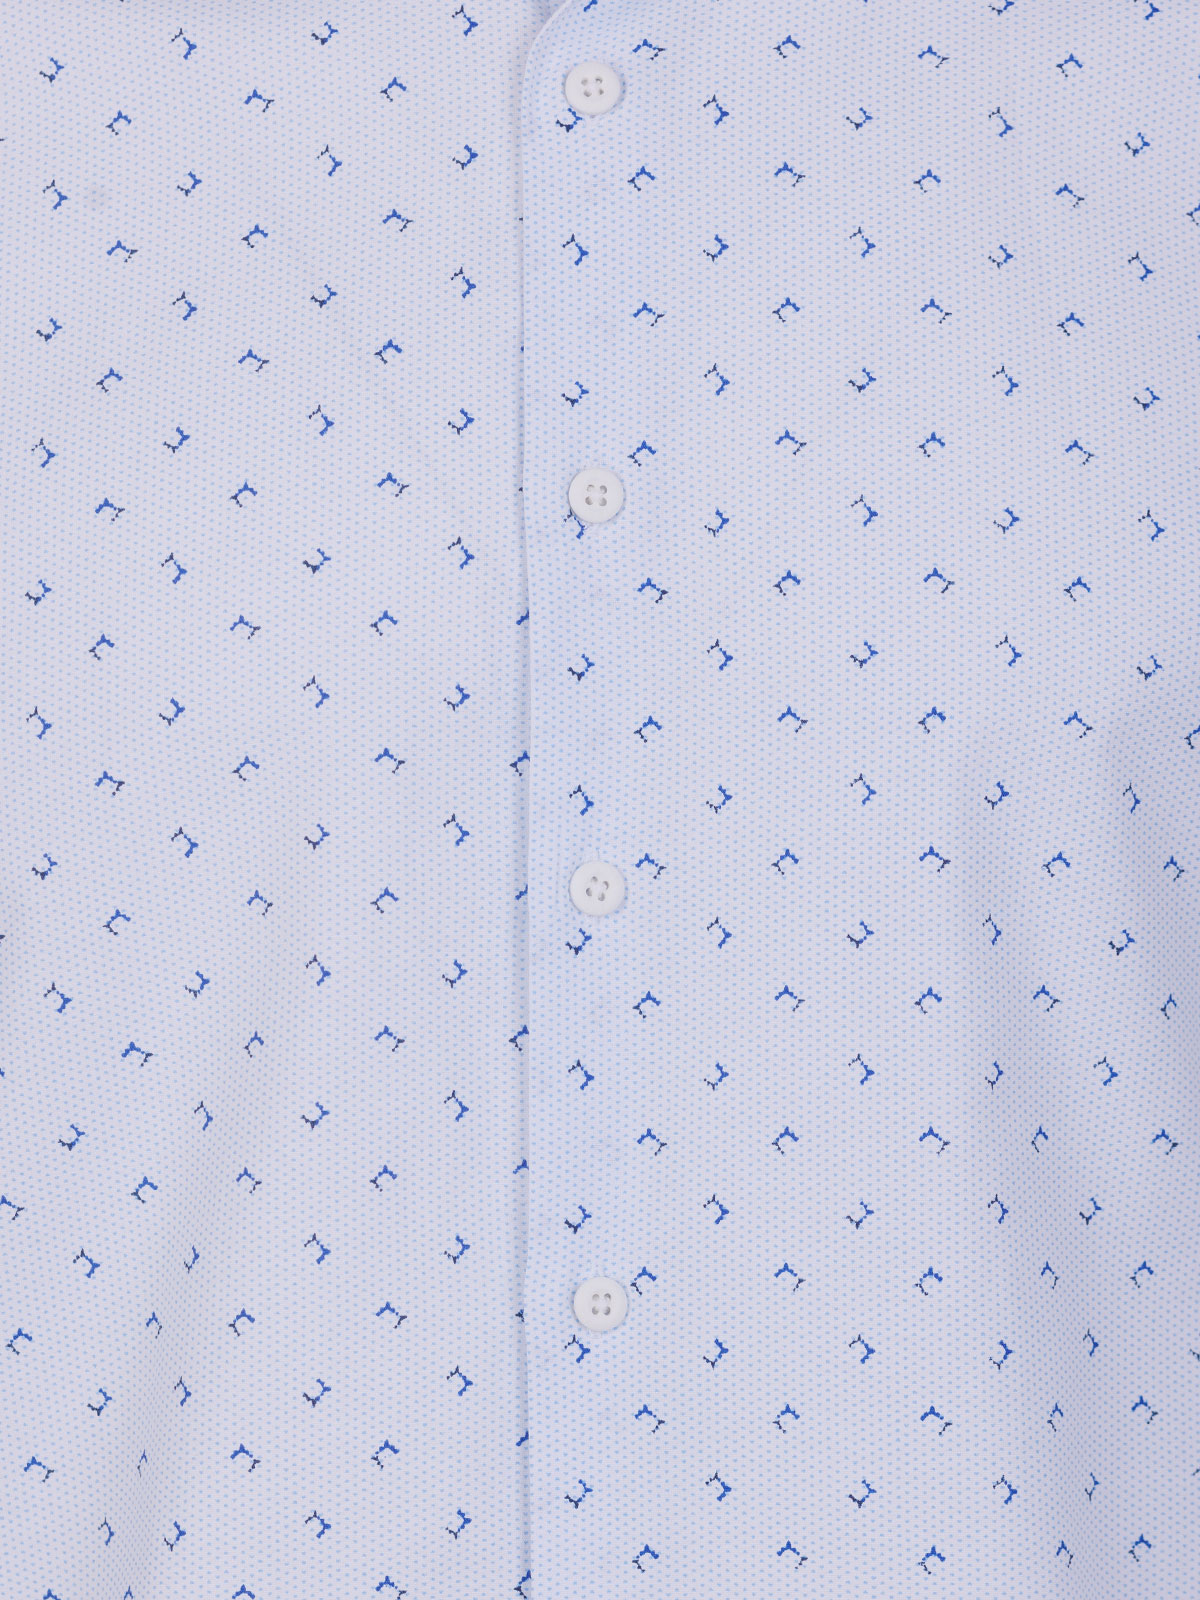 Бяла риза със светли сини фигури - 21601 79.00 лв img3